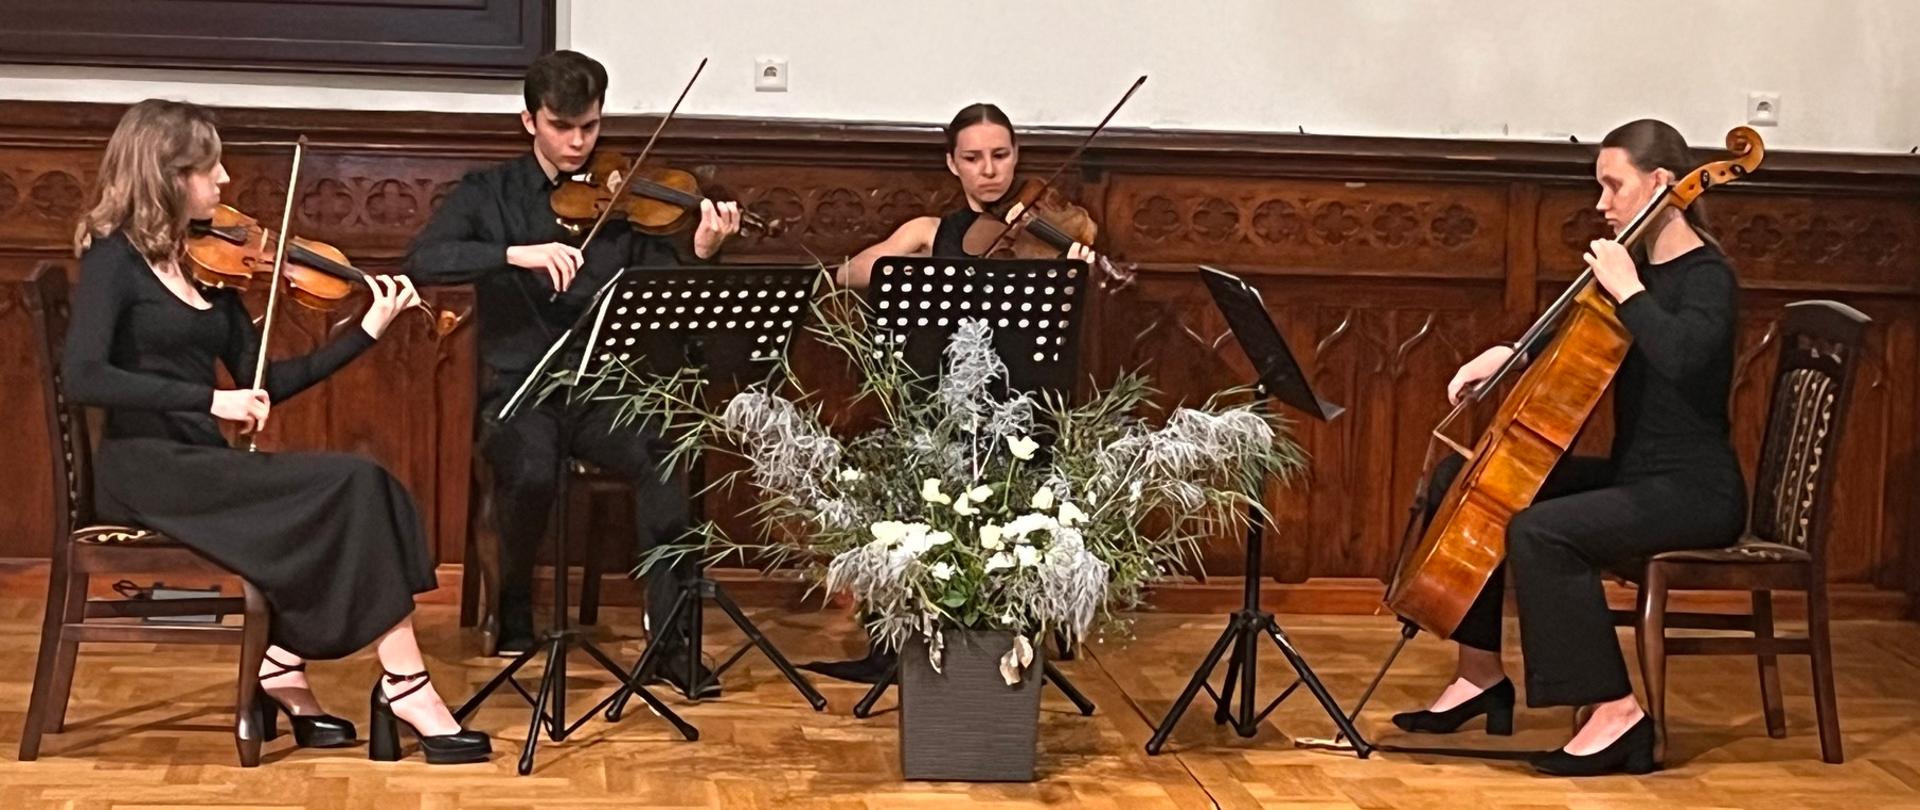 Kwartet PSM II stopnia podczas koncertu na spotkaniu Zasłużony dla Rolnictwa na scenie w sali królewskiej PSM w MIelcu